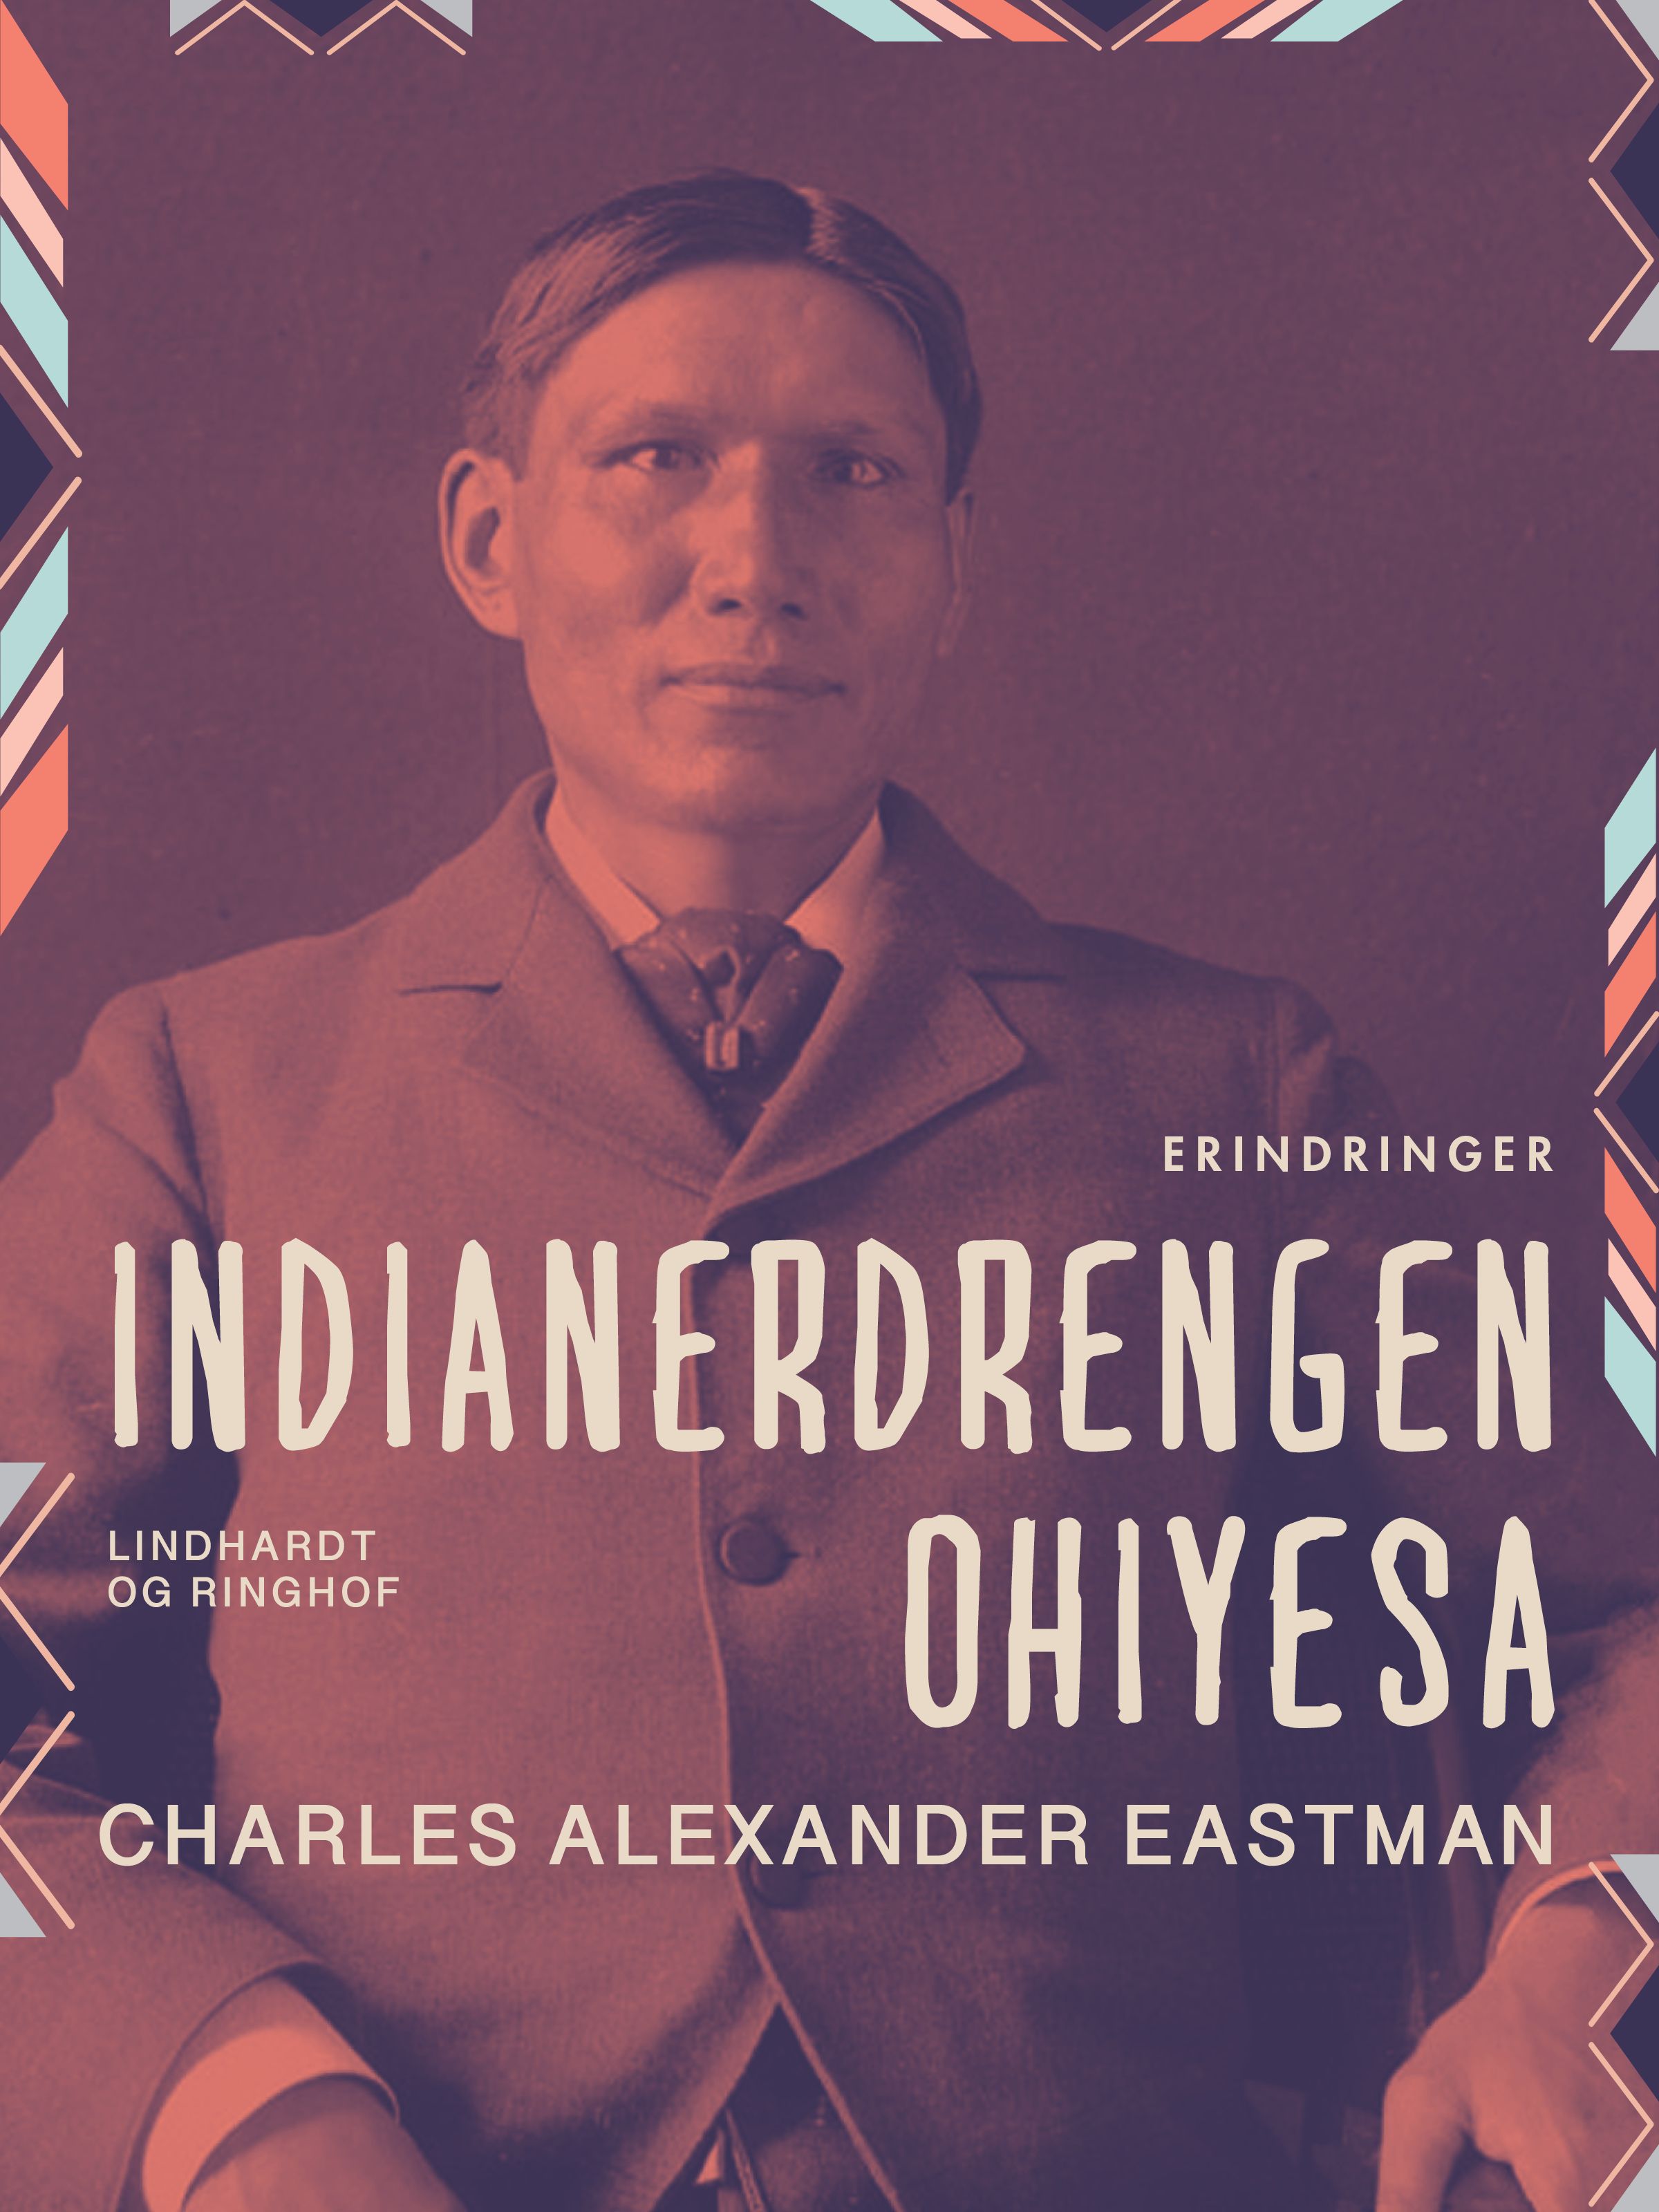 Indianerdrengen Ohiyesa, e-bok av Charles Alexander Eastman